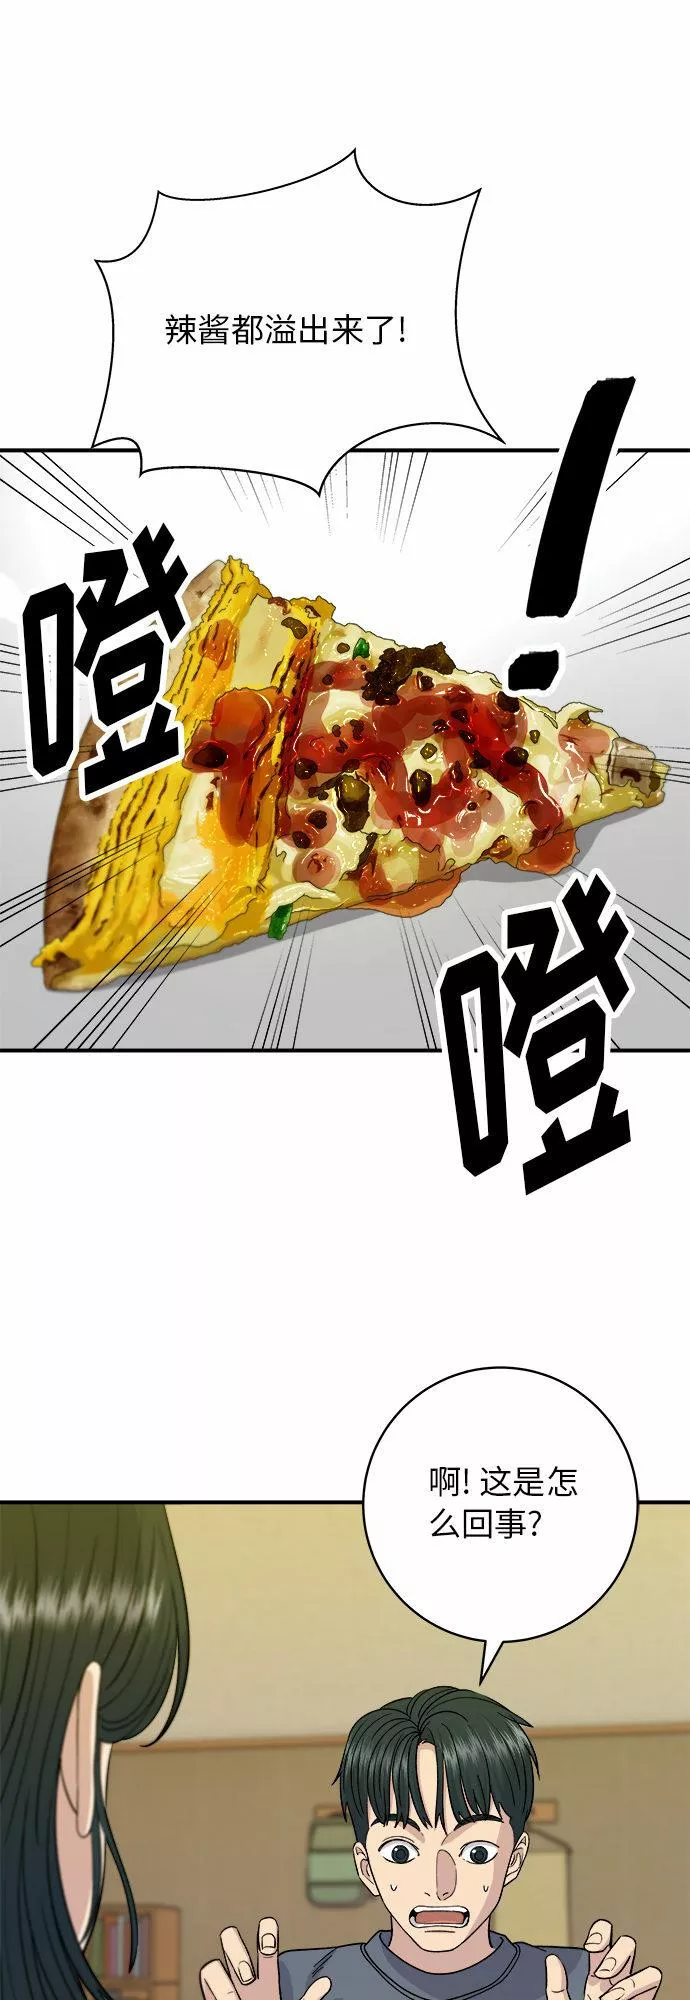 [第61话] 烤肉披萨18